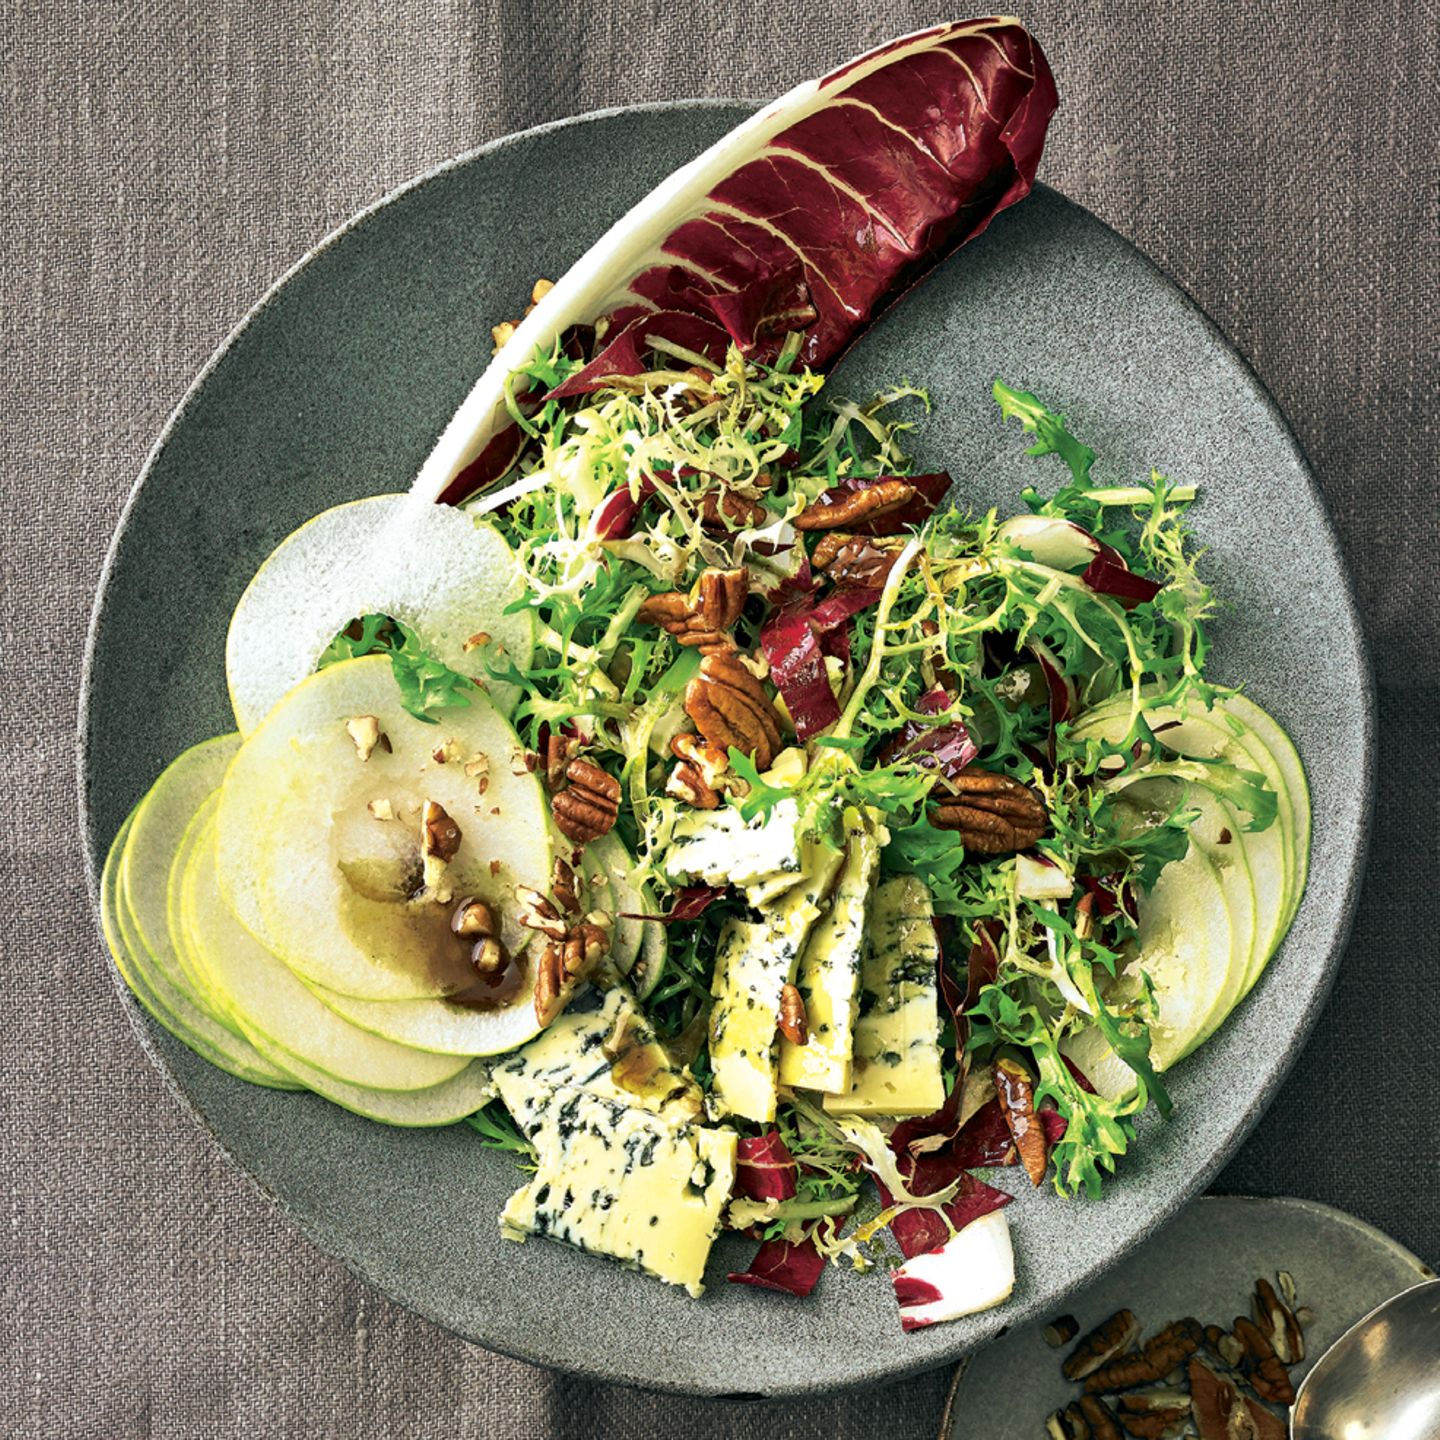 Feldsalat-Rezepte - So wird der Wintersalat gesund und lecker | BRIGITTE.de